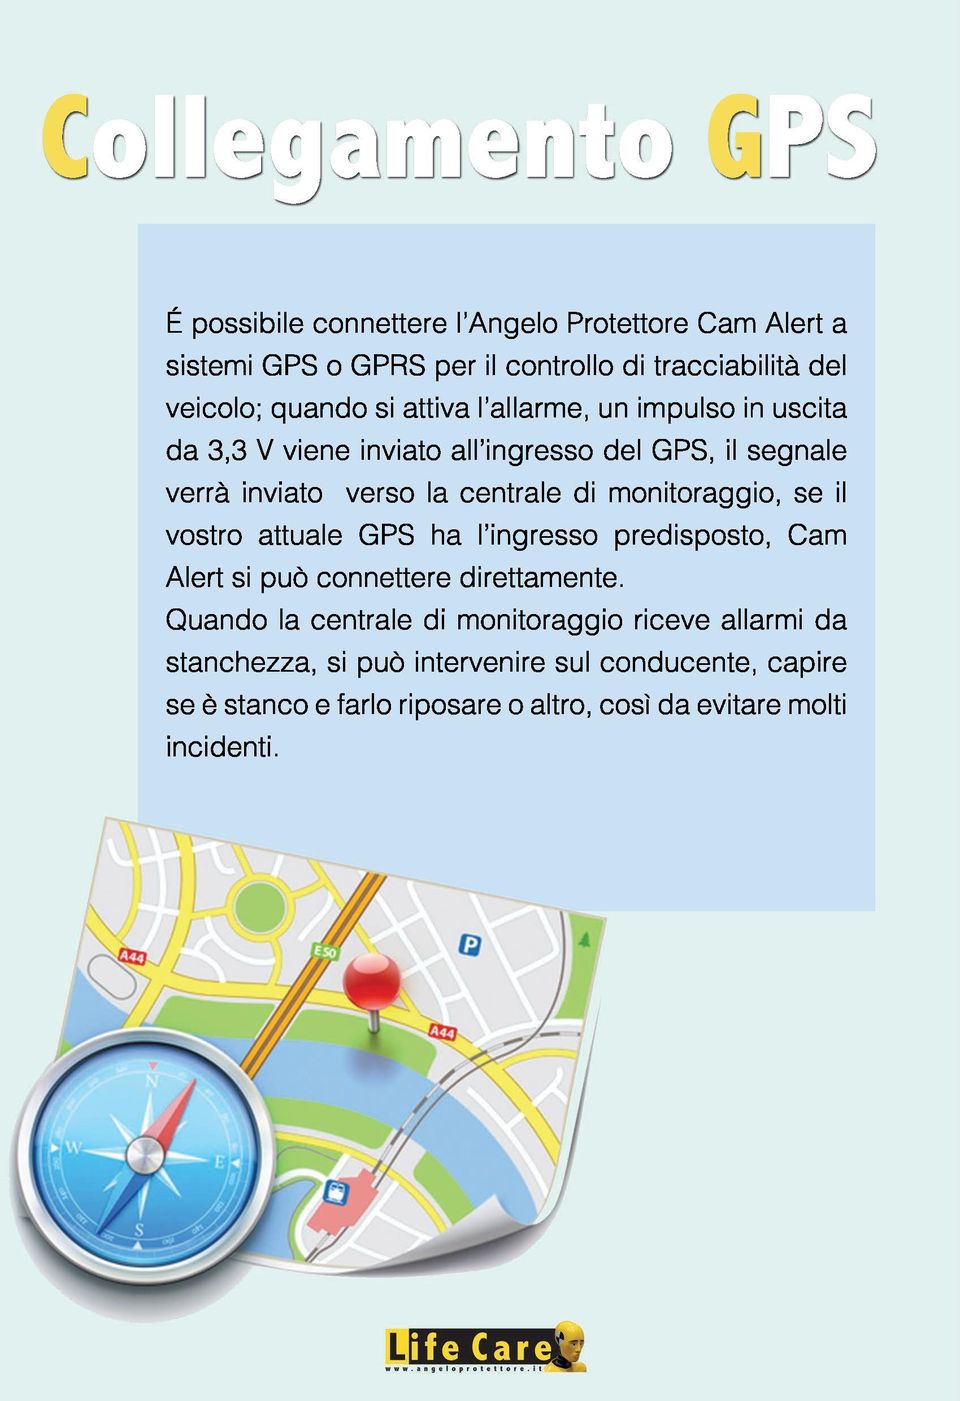 monitoraggio, se il vostro attuale GPS ha l ingresso predisposto, Cam Alert si può connettere direttamente.